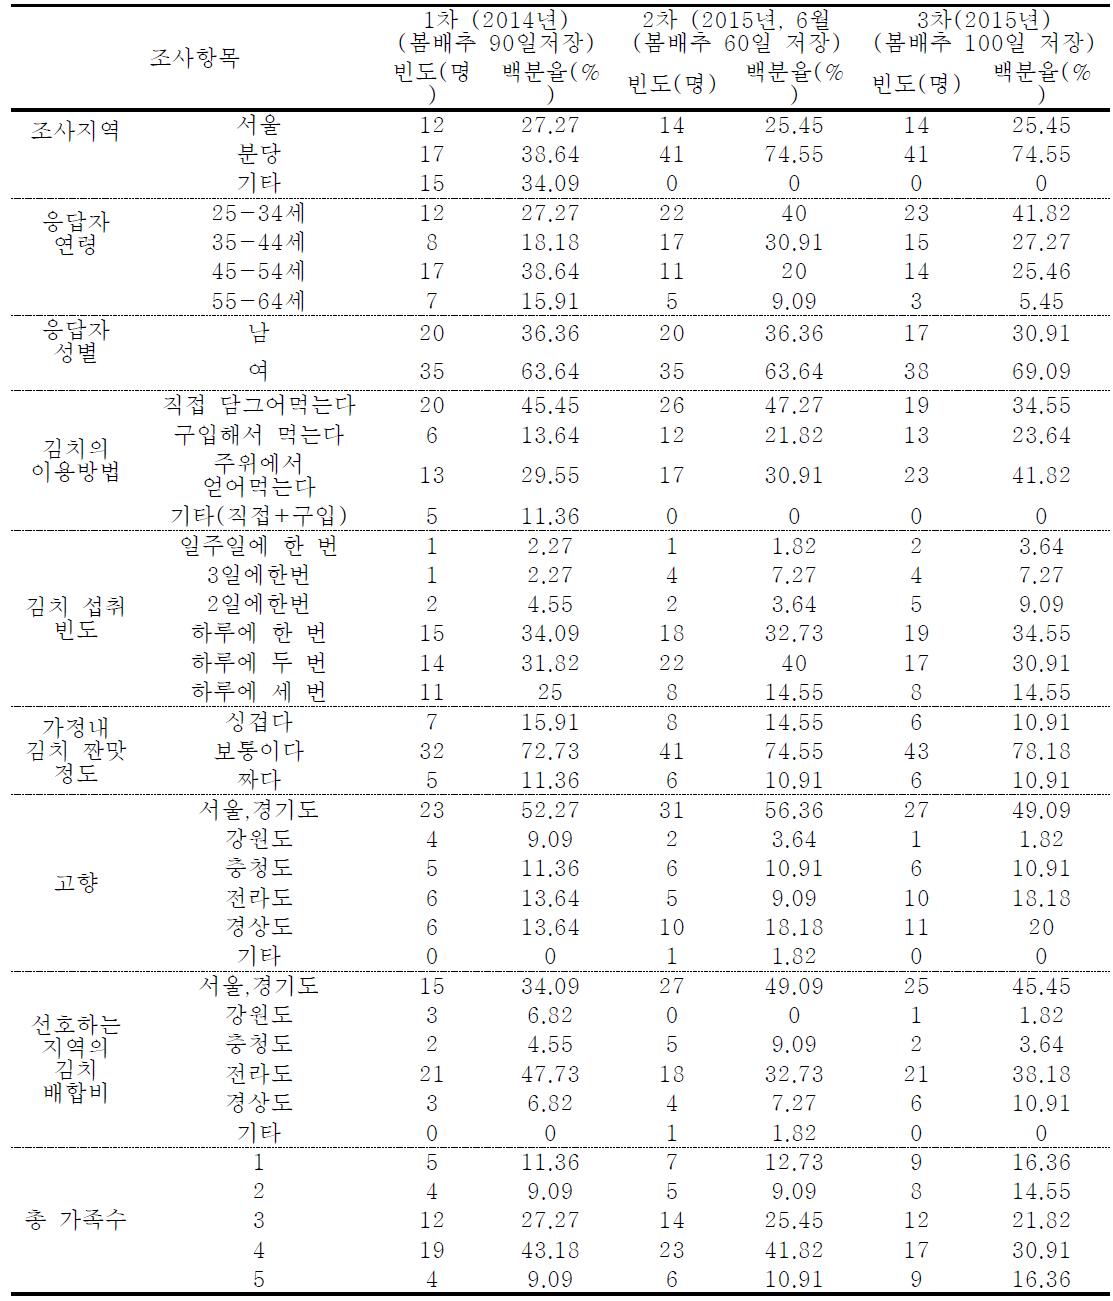 저장 절임배추를 이용한 김치의 가정사용 검사 결과(일반정보)